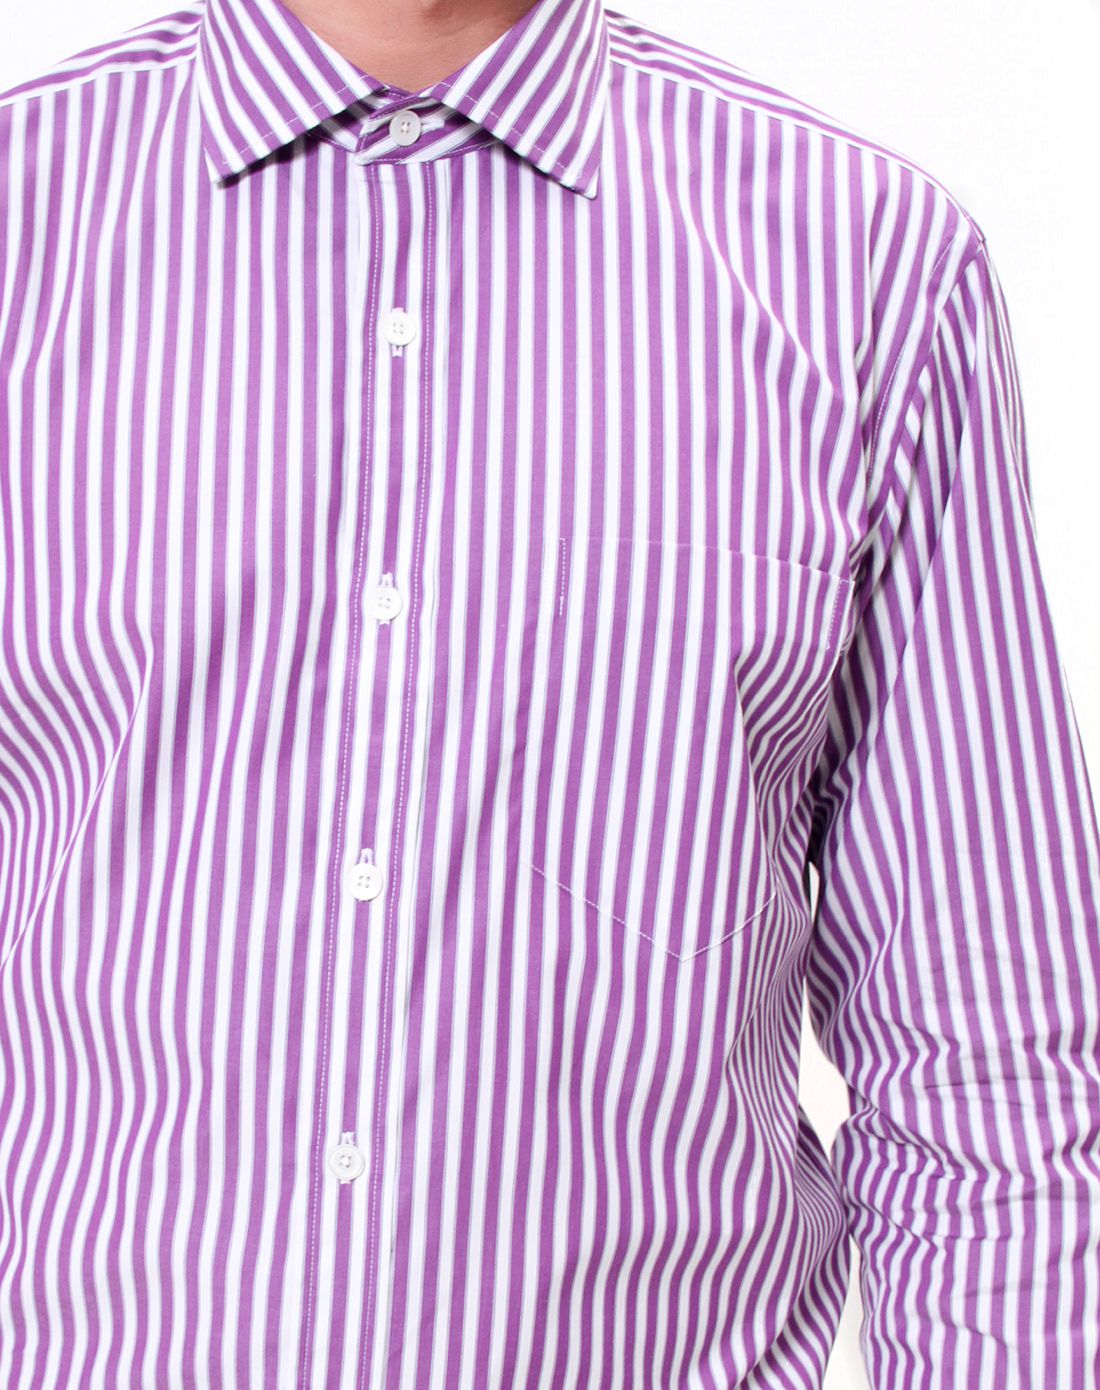 kent&curwen男款白/紫色竖条纹纯棉衬衫